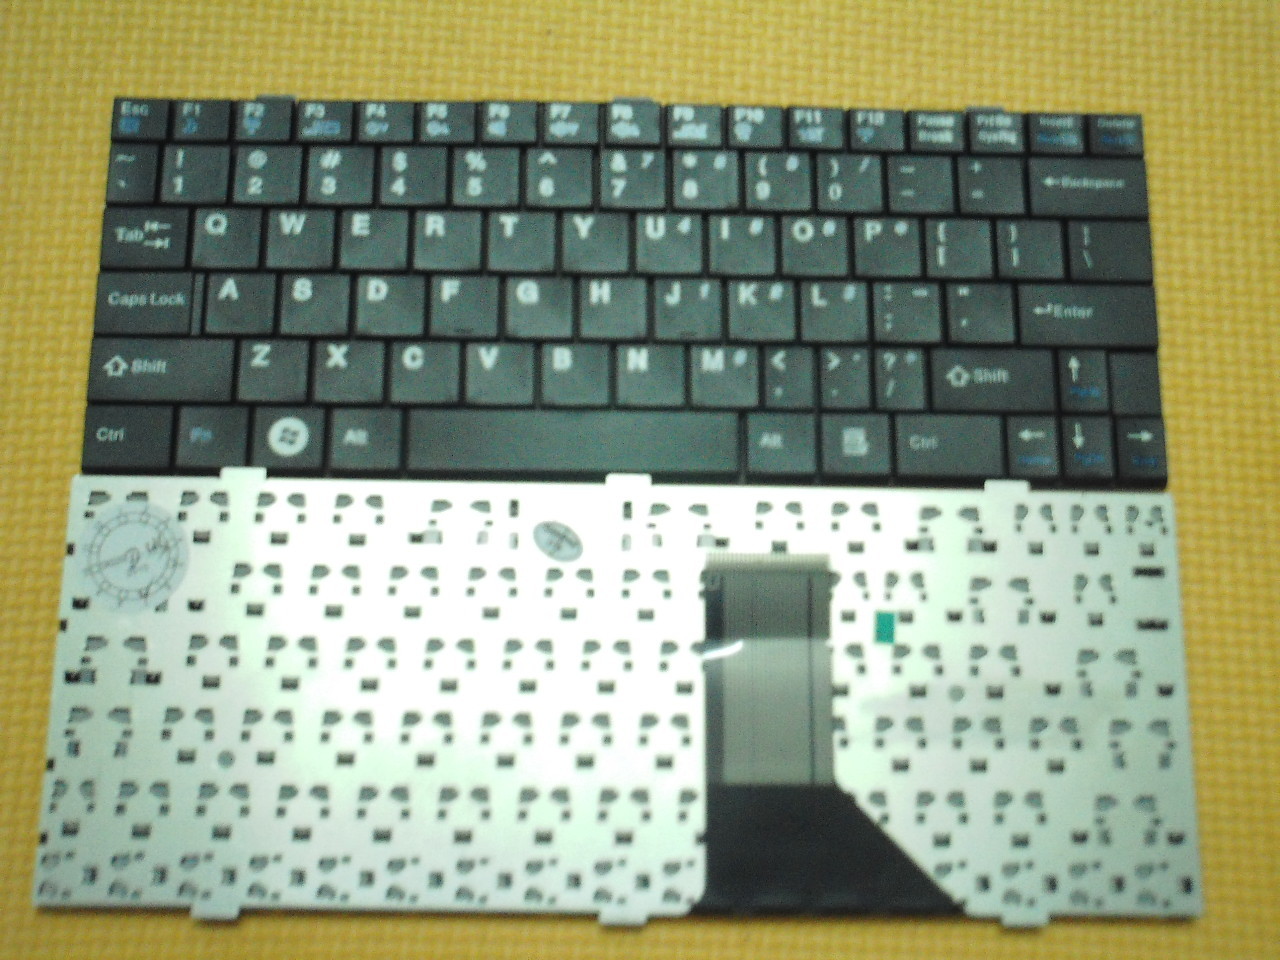 全新 神舟 优雅UV20-C17 D3 七喜 M1 海尔 X105笔记本 键盘